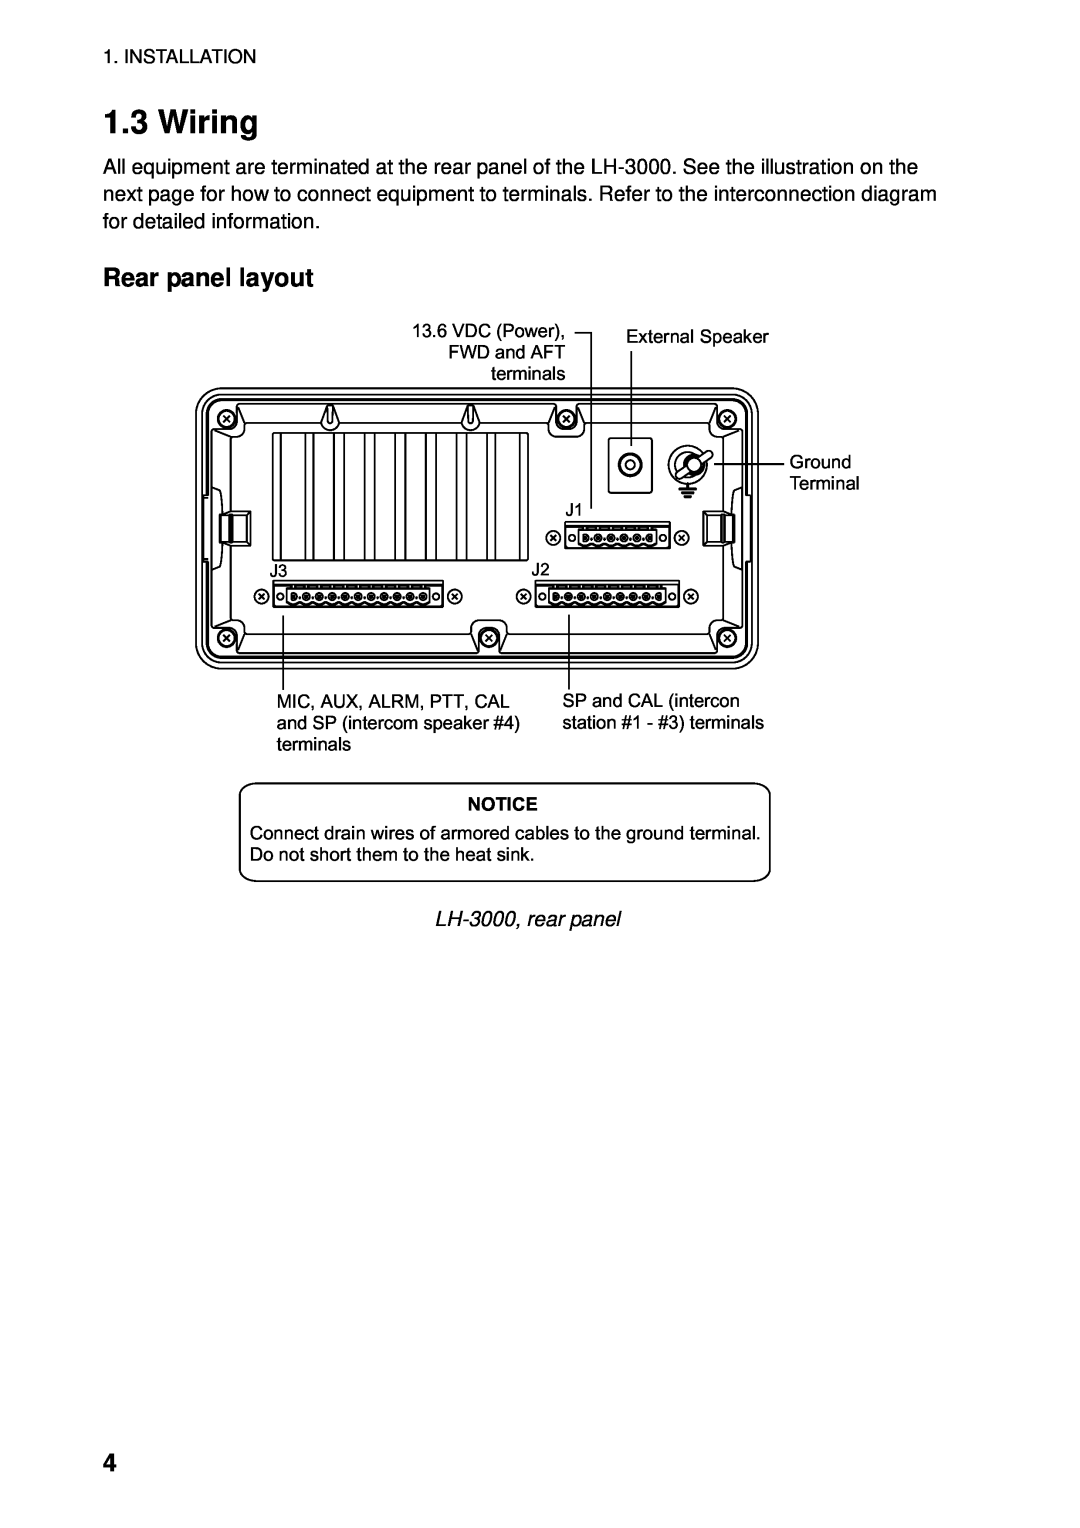 Furuno LH-3000 manual Wiring, Rear panel layout 